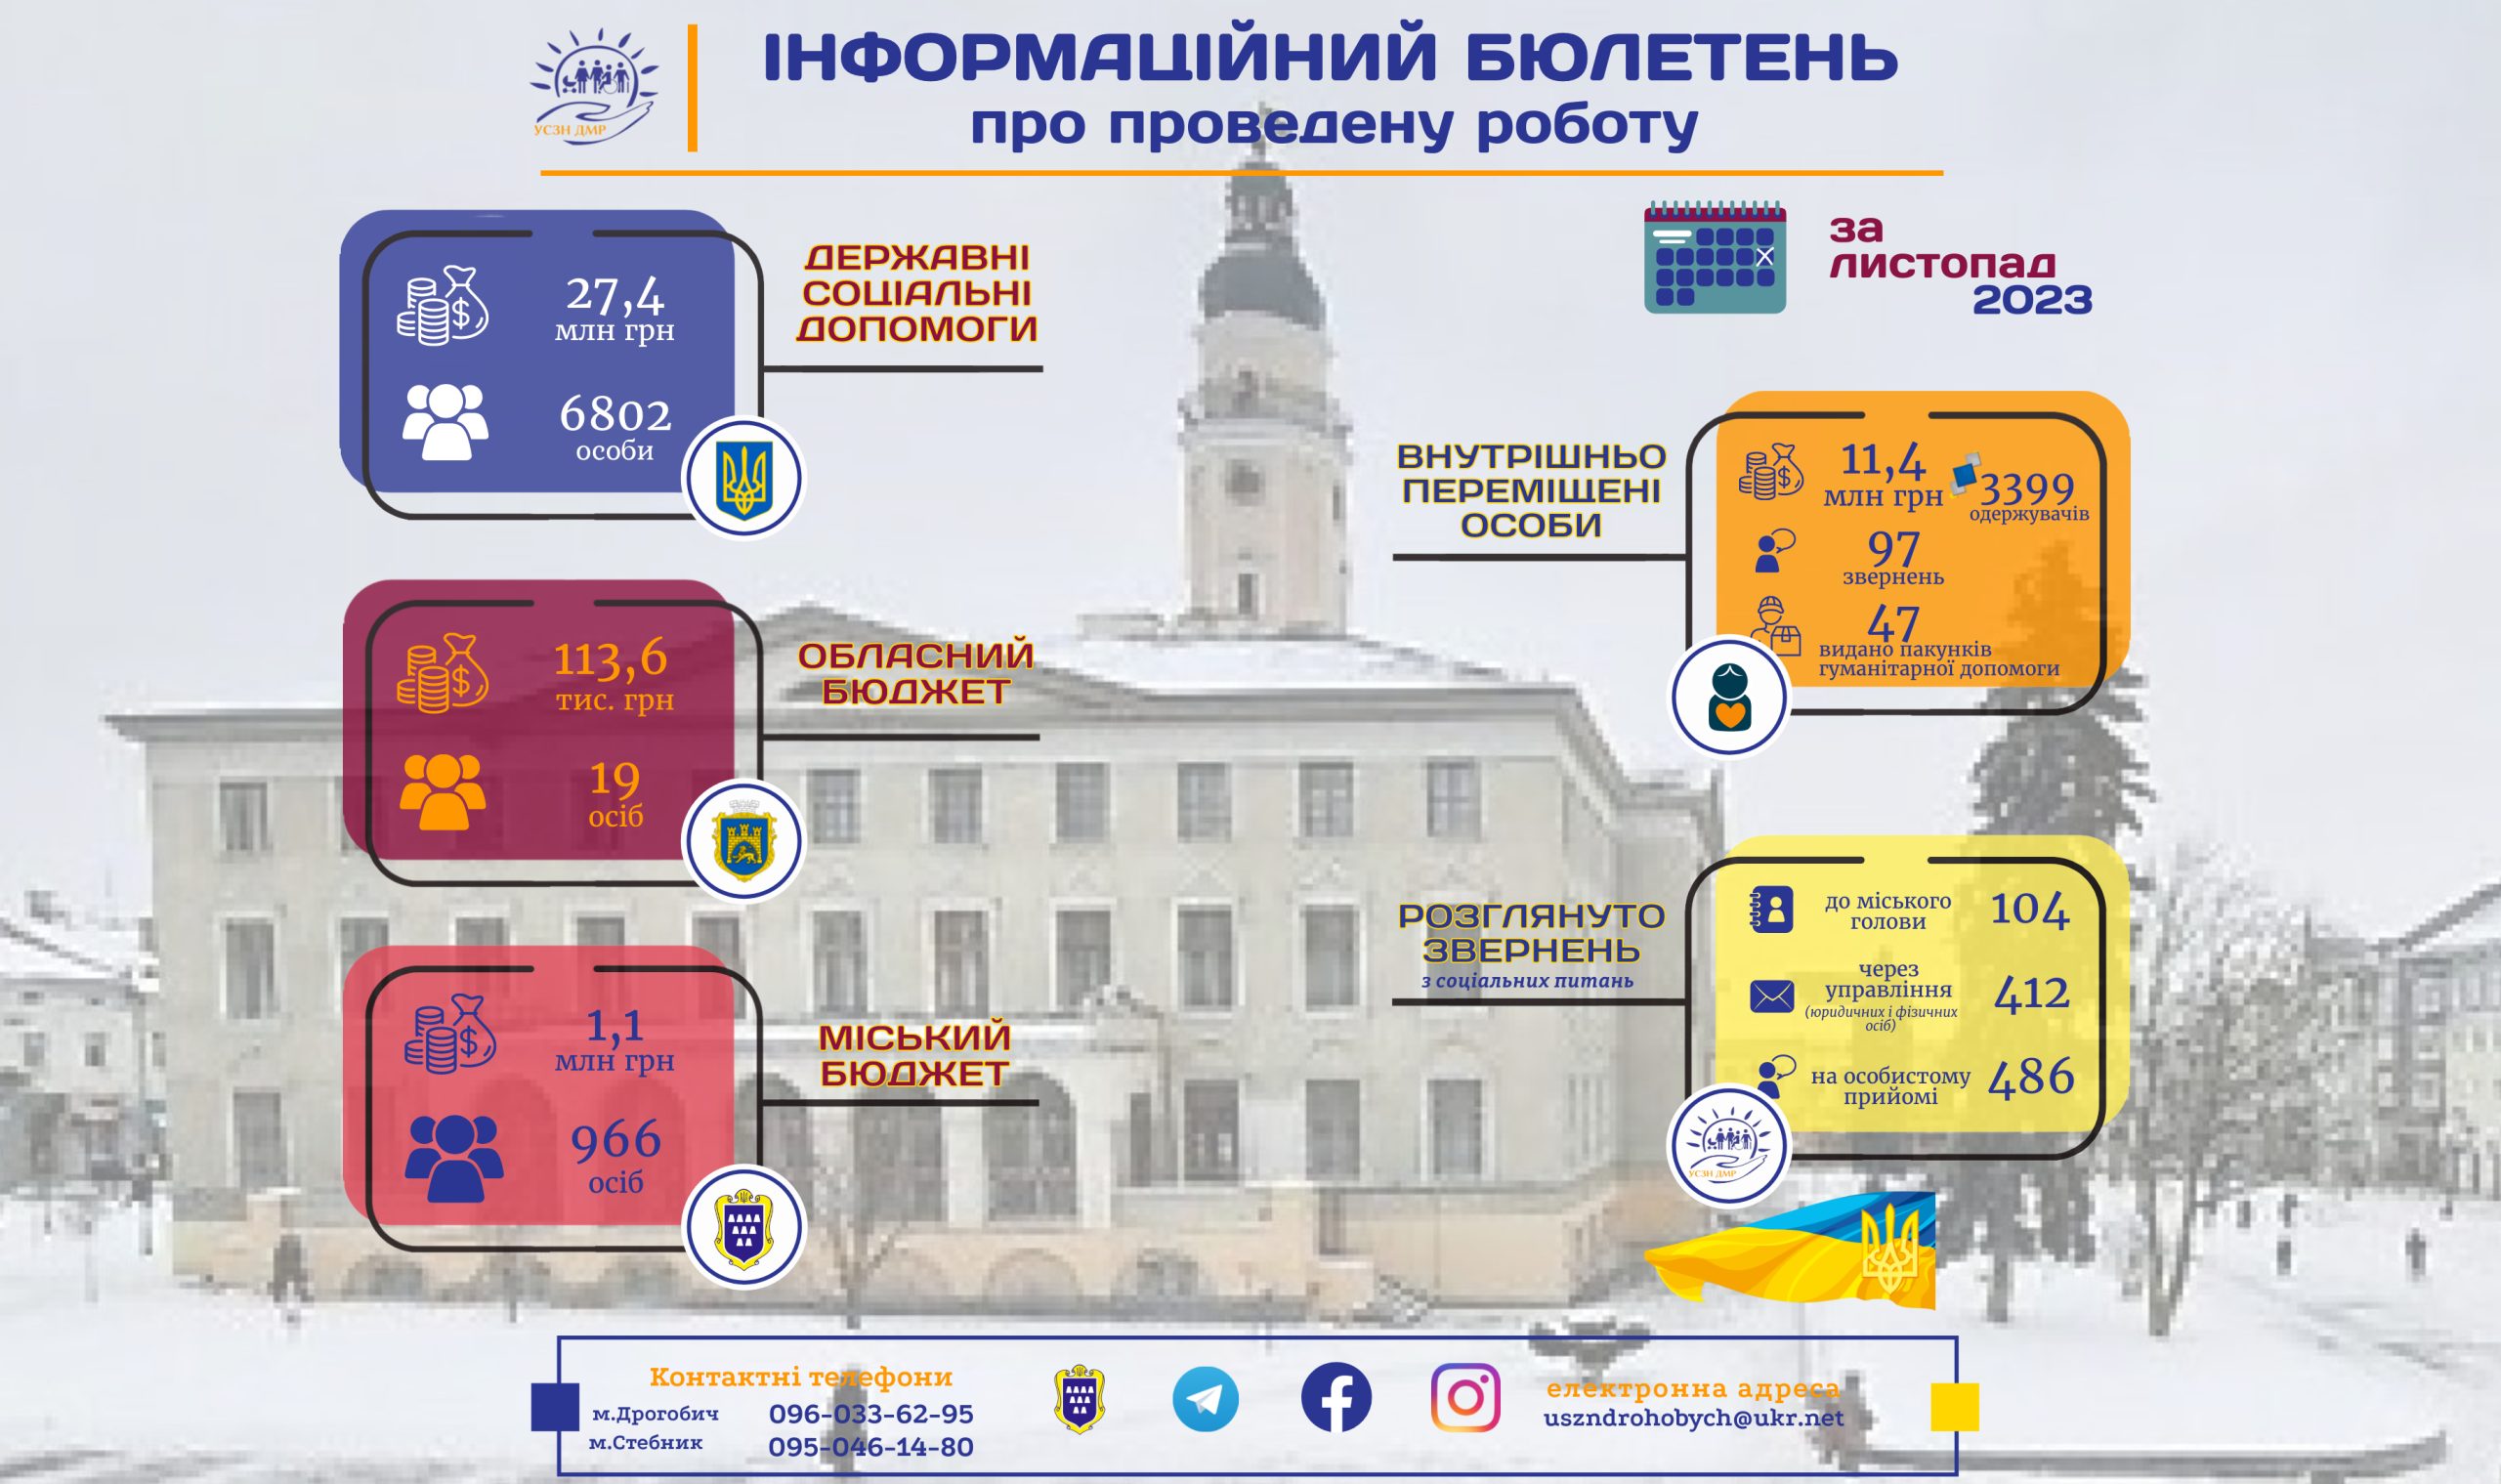 Інформаційний бюлетень про проведену роботу управління соціального захисту населення Дрогобицької міської ради за листопад 2023р.